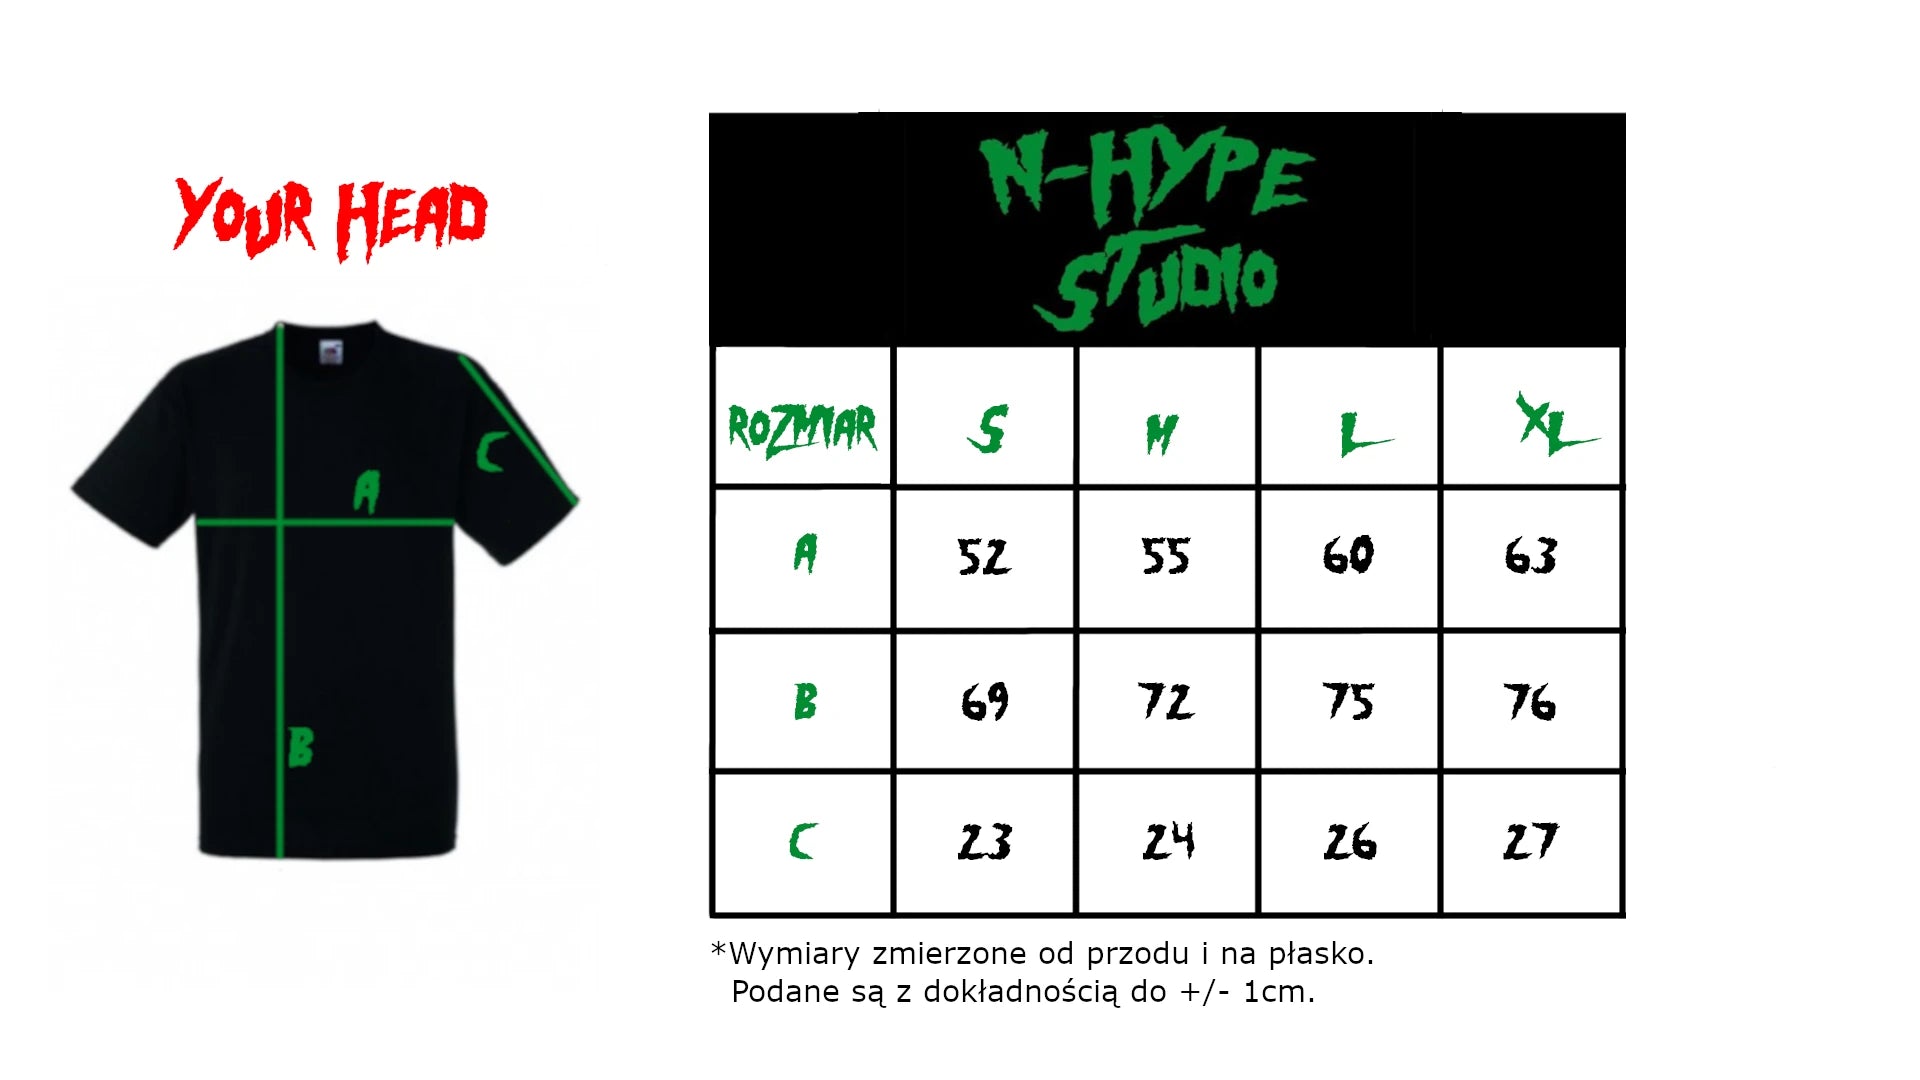 N-Hype Studio Łódź City Pack T-shirt Black